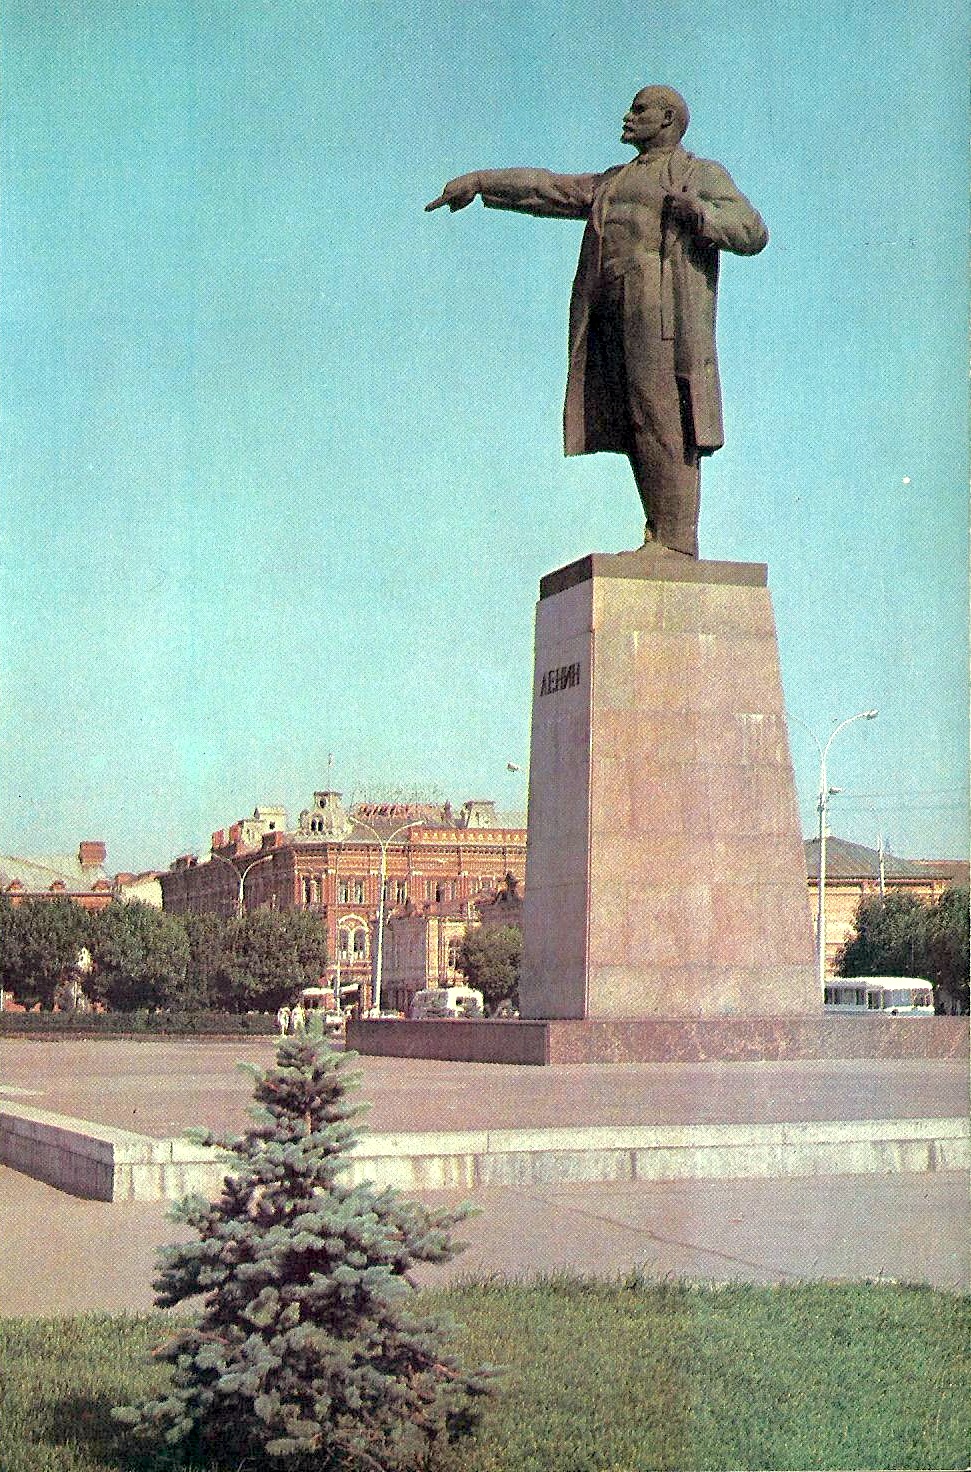 Памятник Владимиру Ильичу Ленину